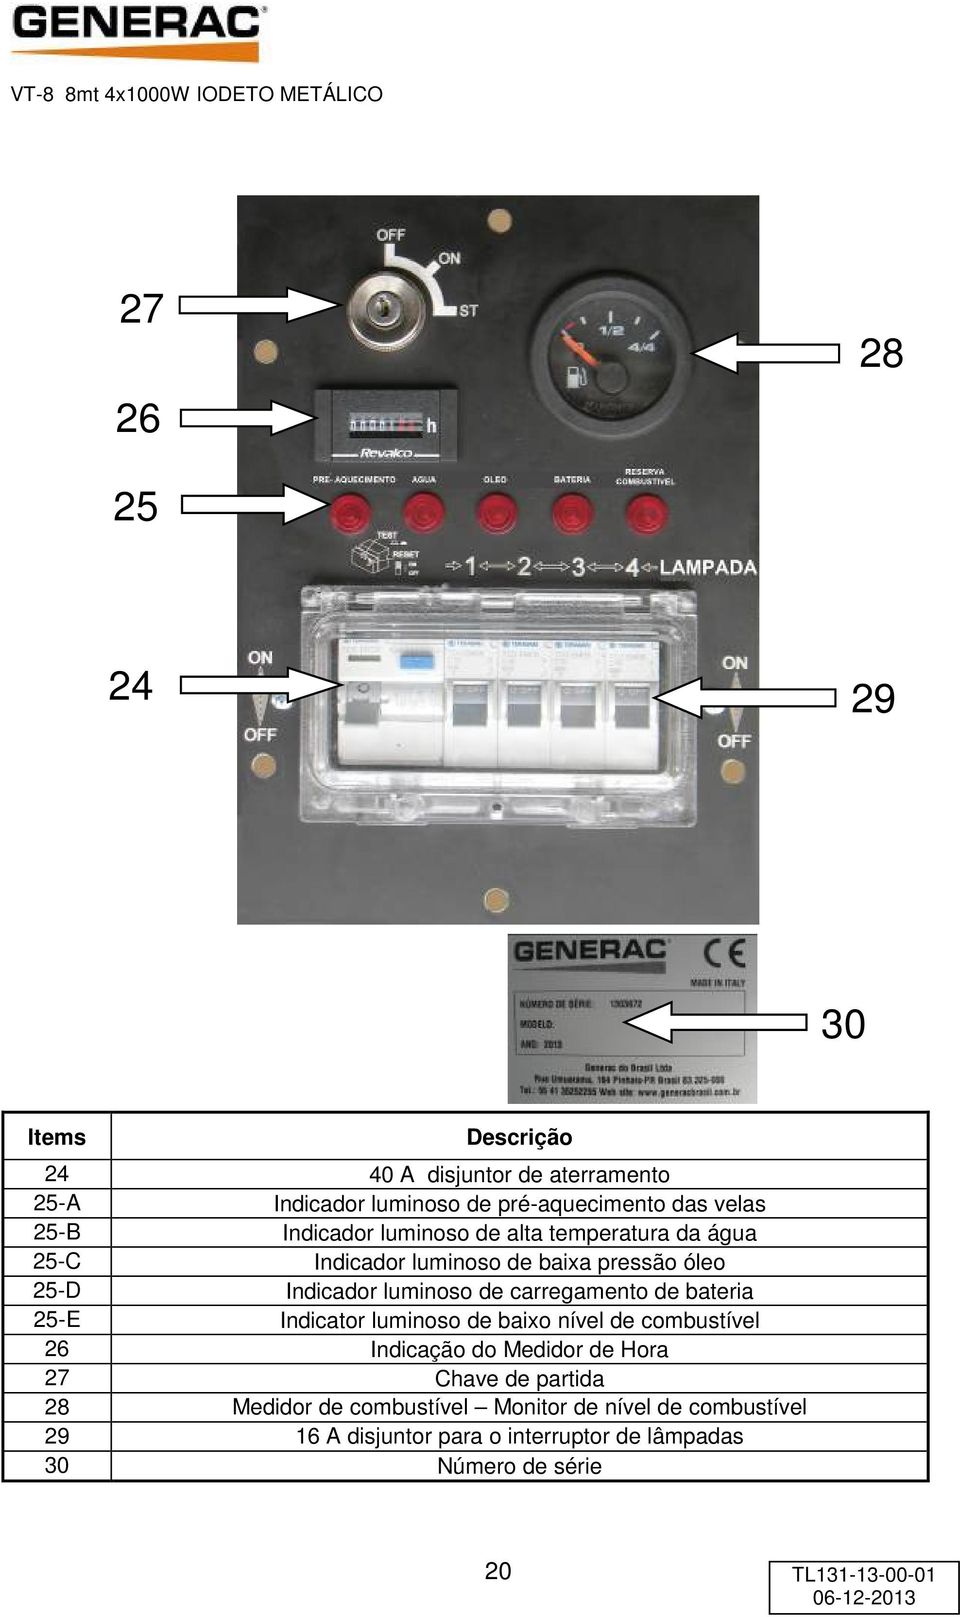 carregamento de bateria 25-E Indicator luminoso de baixo nível de combustível 26 Indicação do Medidor de Hora 27 Chave de partida